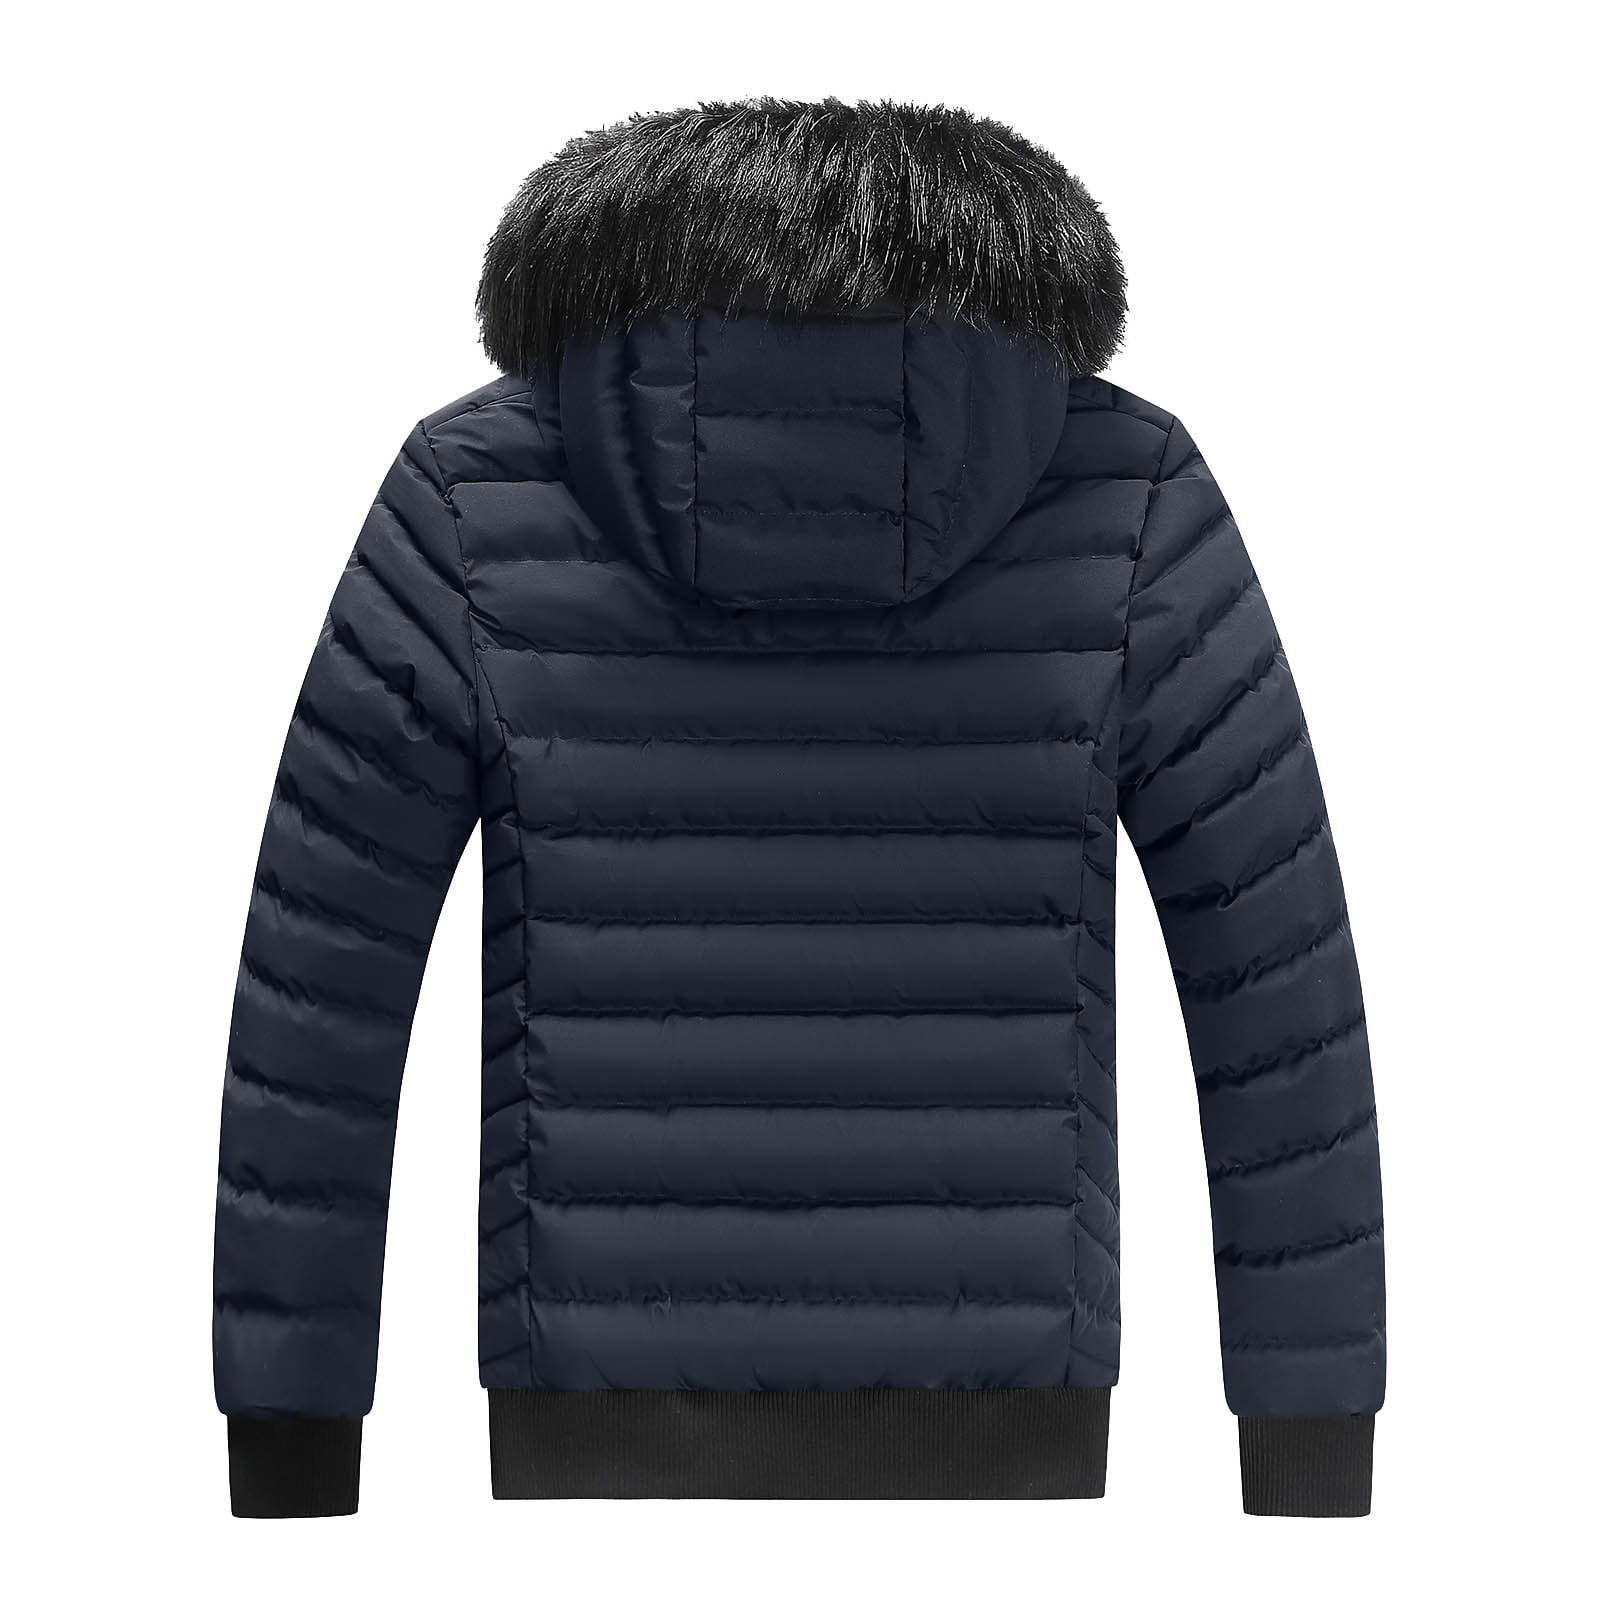 LEEy-world Winter Coats for Men Men's Long-Sleeve Full-Zip Lightweight  Packable Hooded Puffer Jacket Army Green,XL 